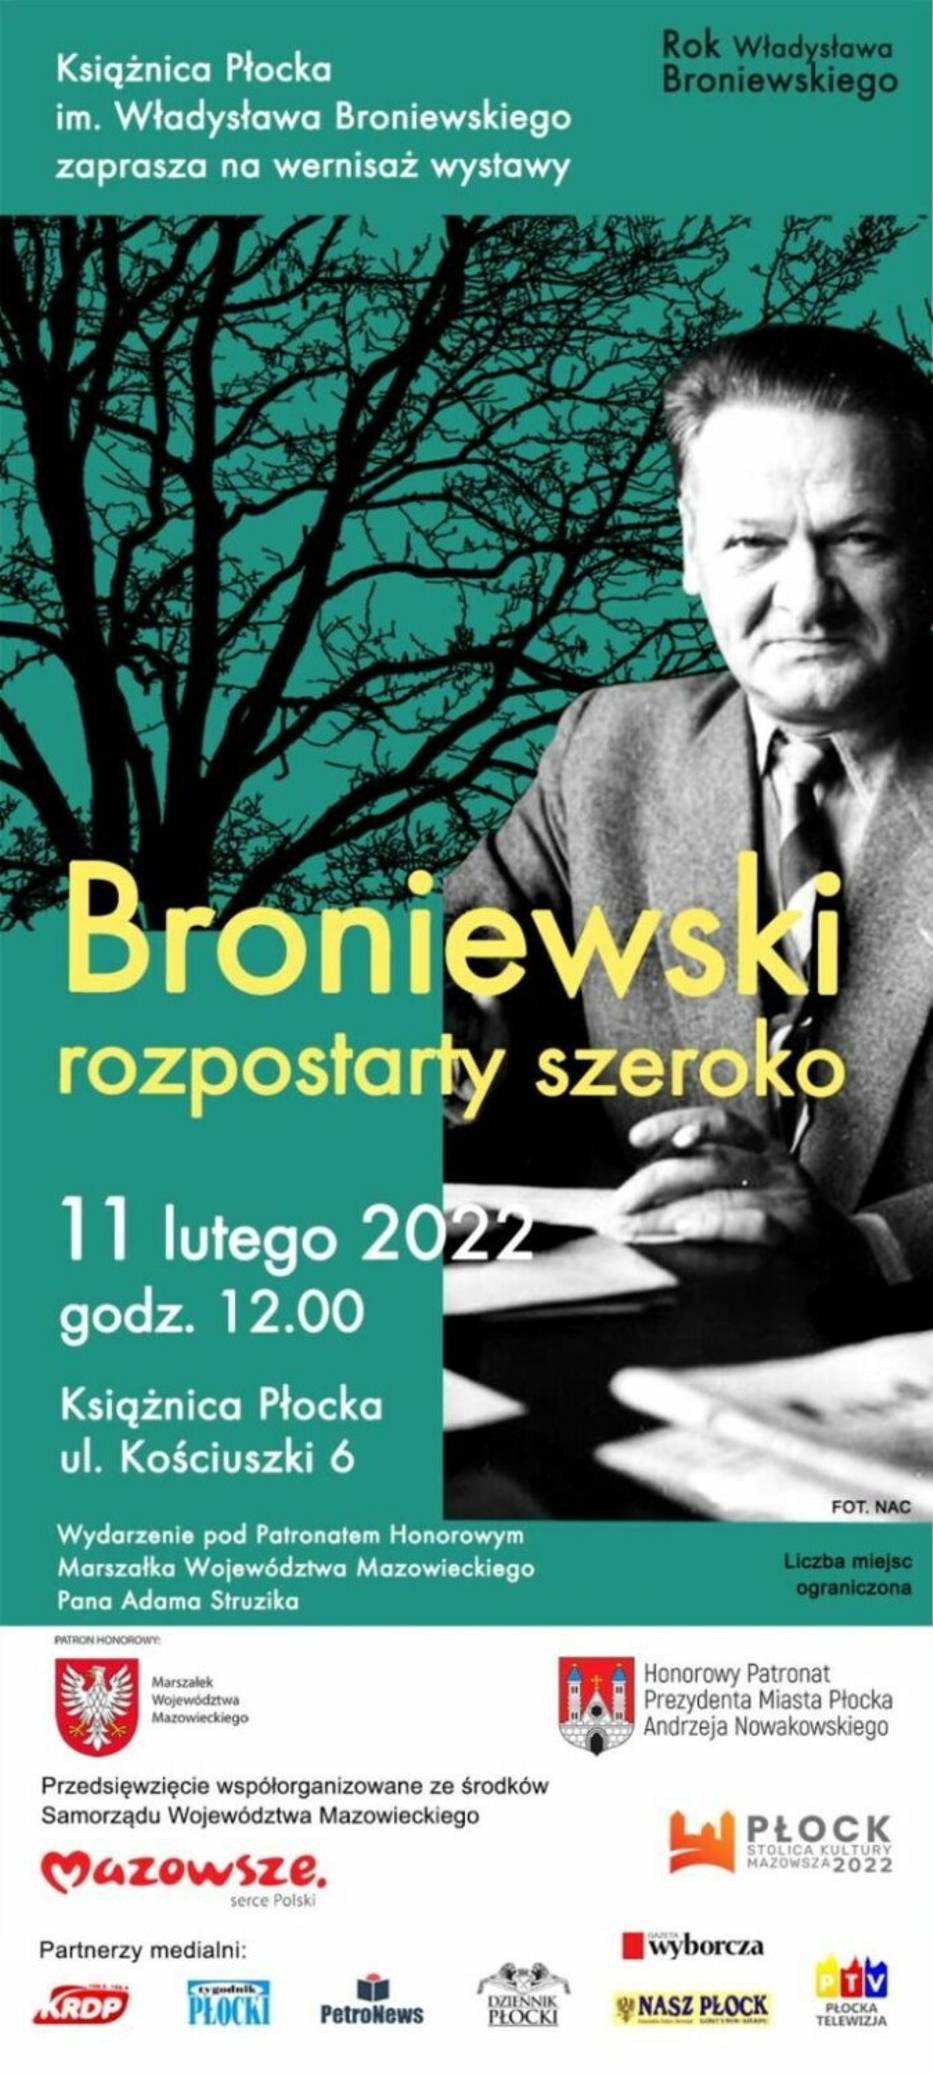 Wystawa “Broniewski rozpostarty szeroko” w Książnicy Płockiej. Otwarcie już jutro